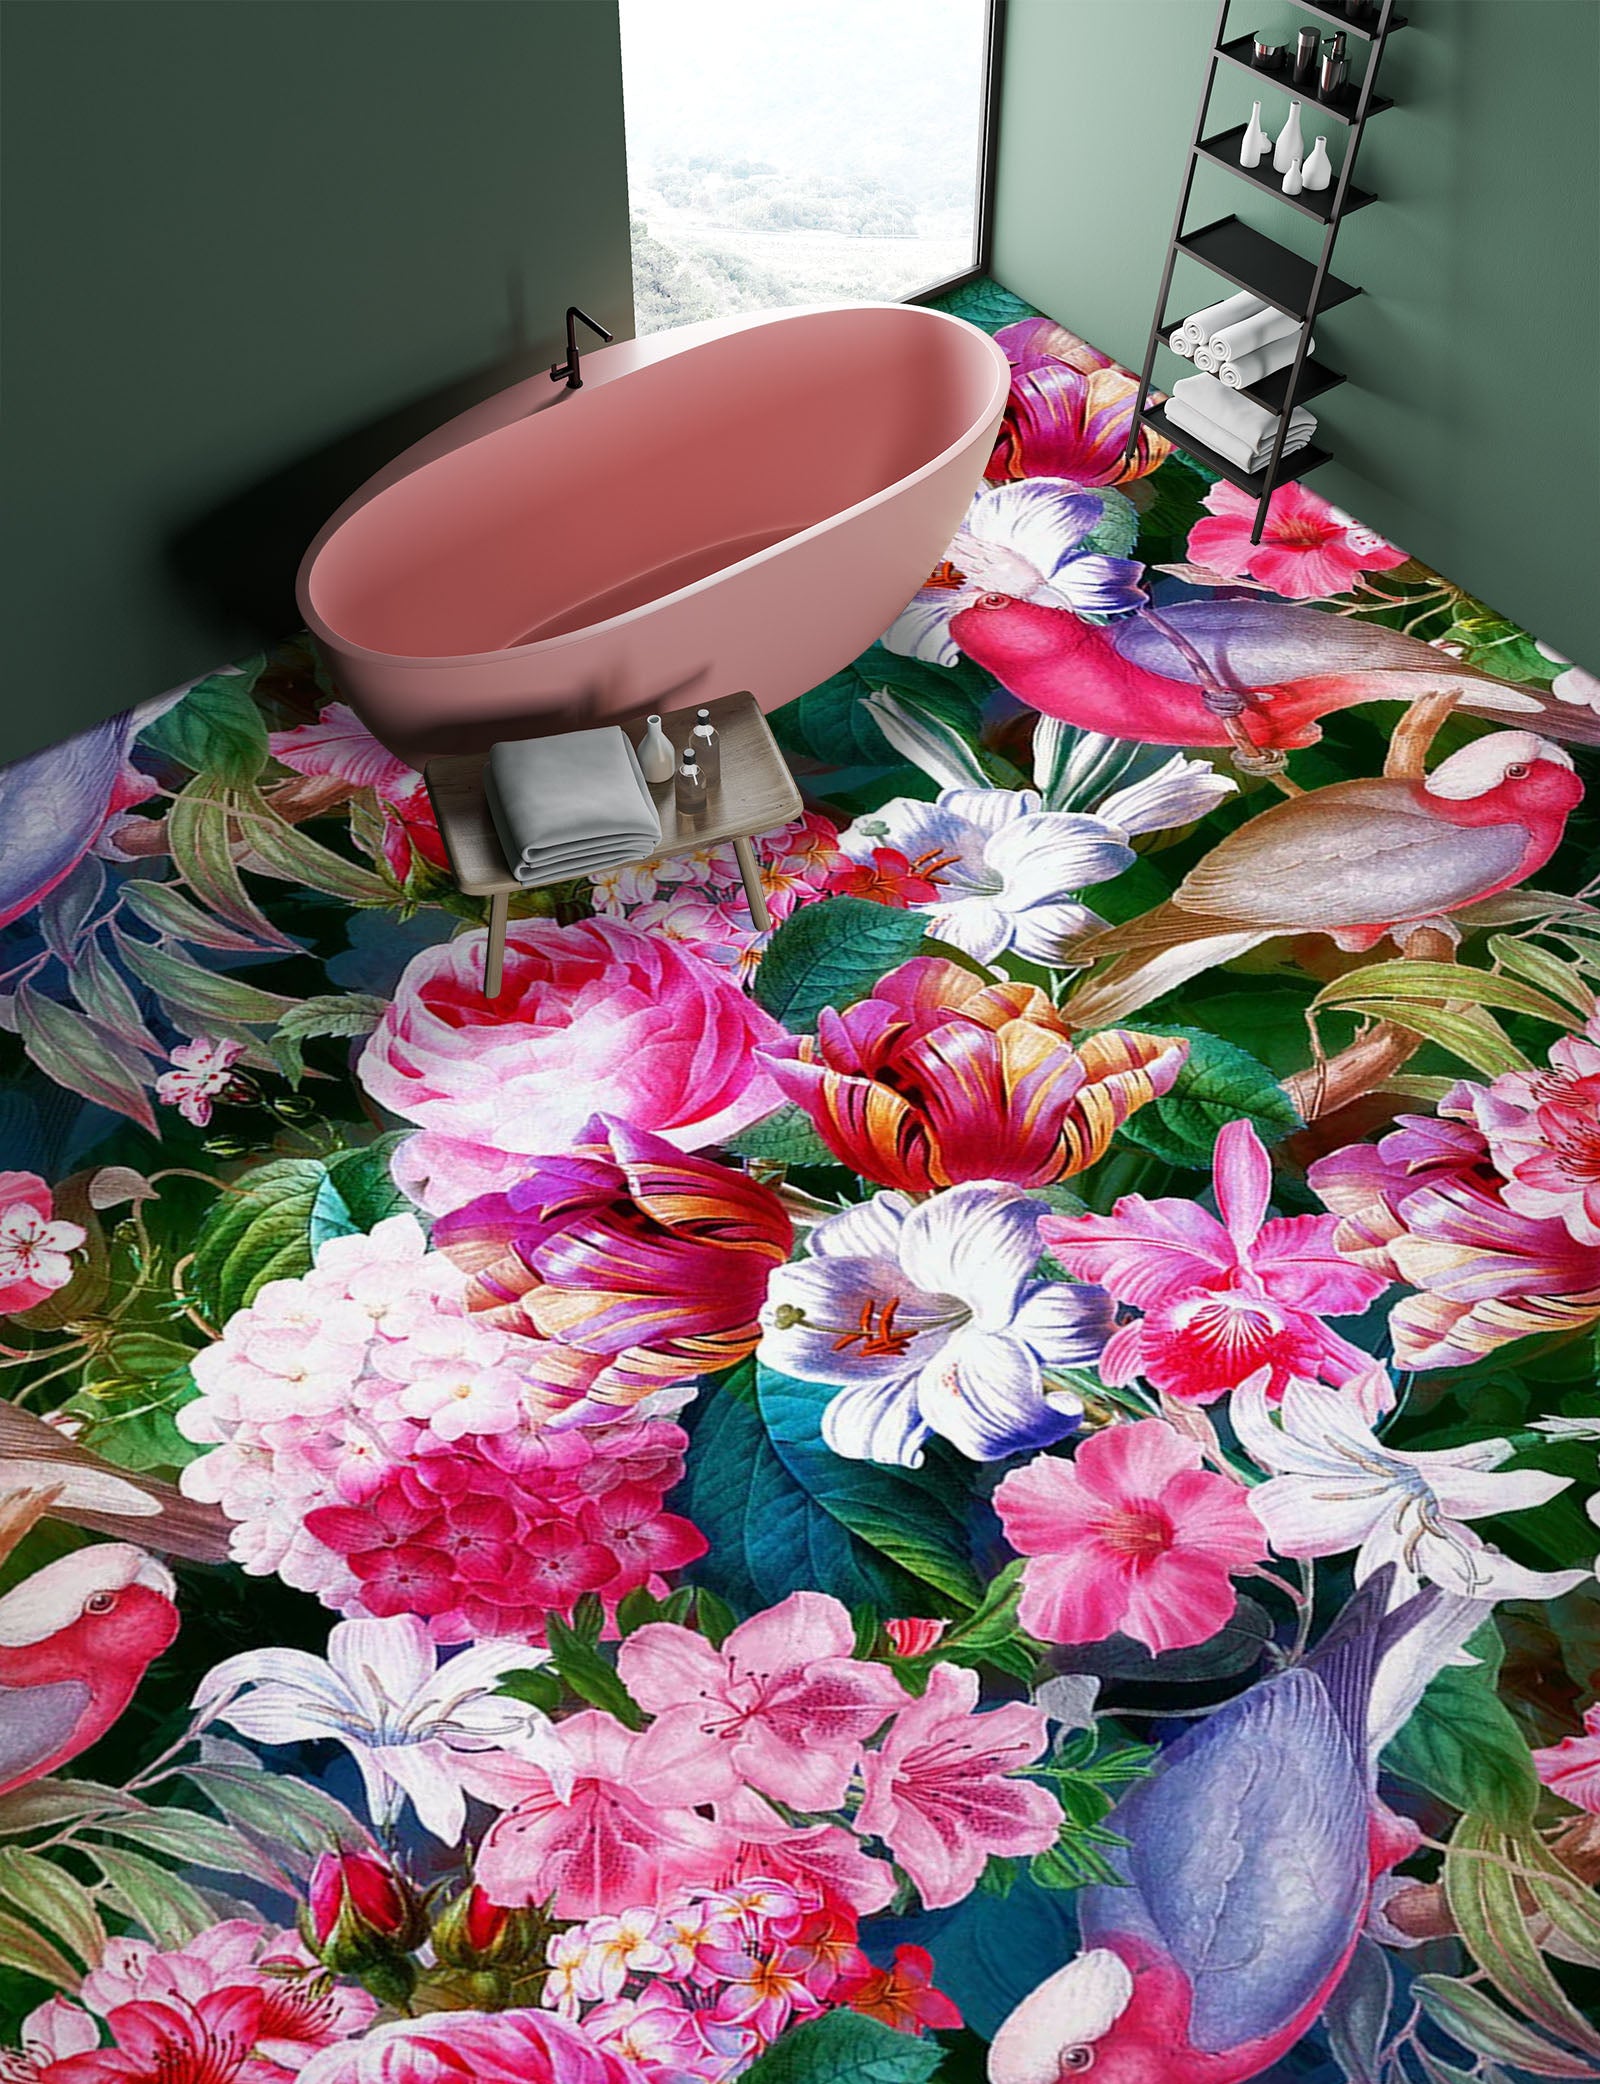 3D Pink Garden Bird 99201 Uta Naumann Floor Mural  Wallpaper Murals Self-Adhesive Removable Print Epoxy